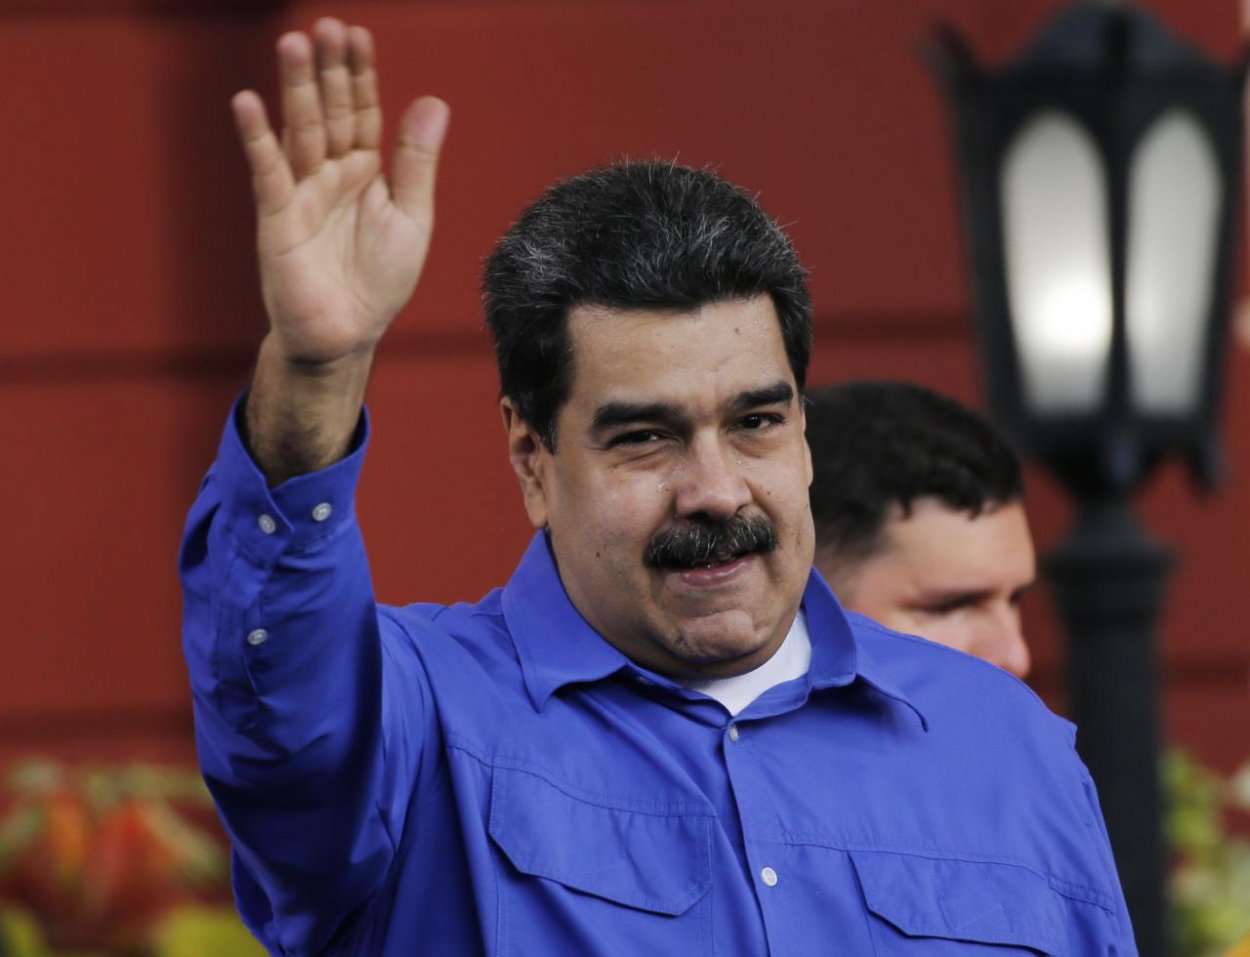 Socialistická revolúcia zlyhala. Ľudia trpia, Maduro vládne ďalej